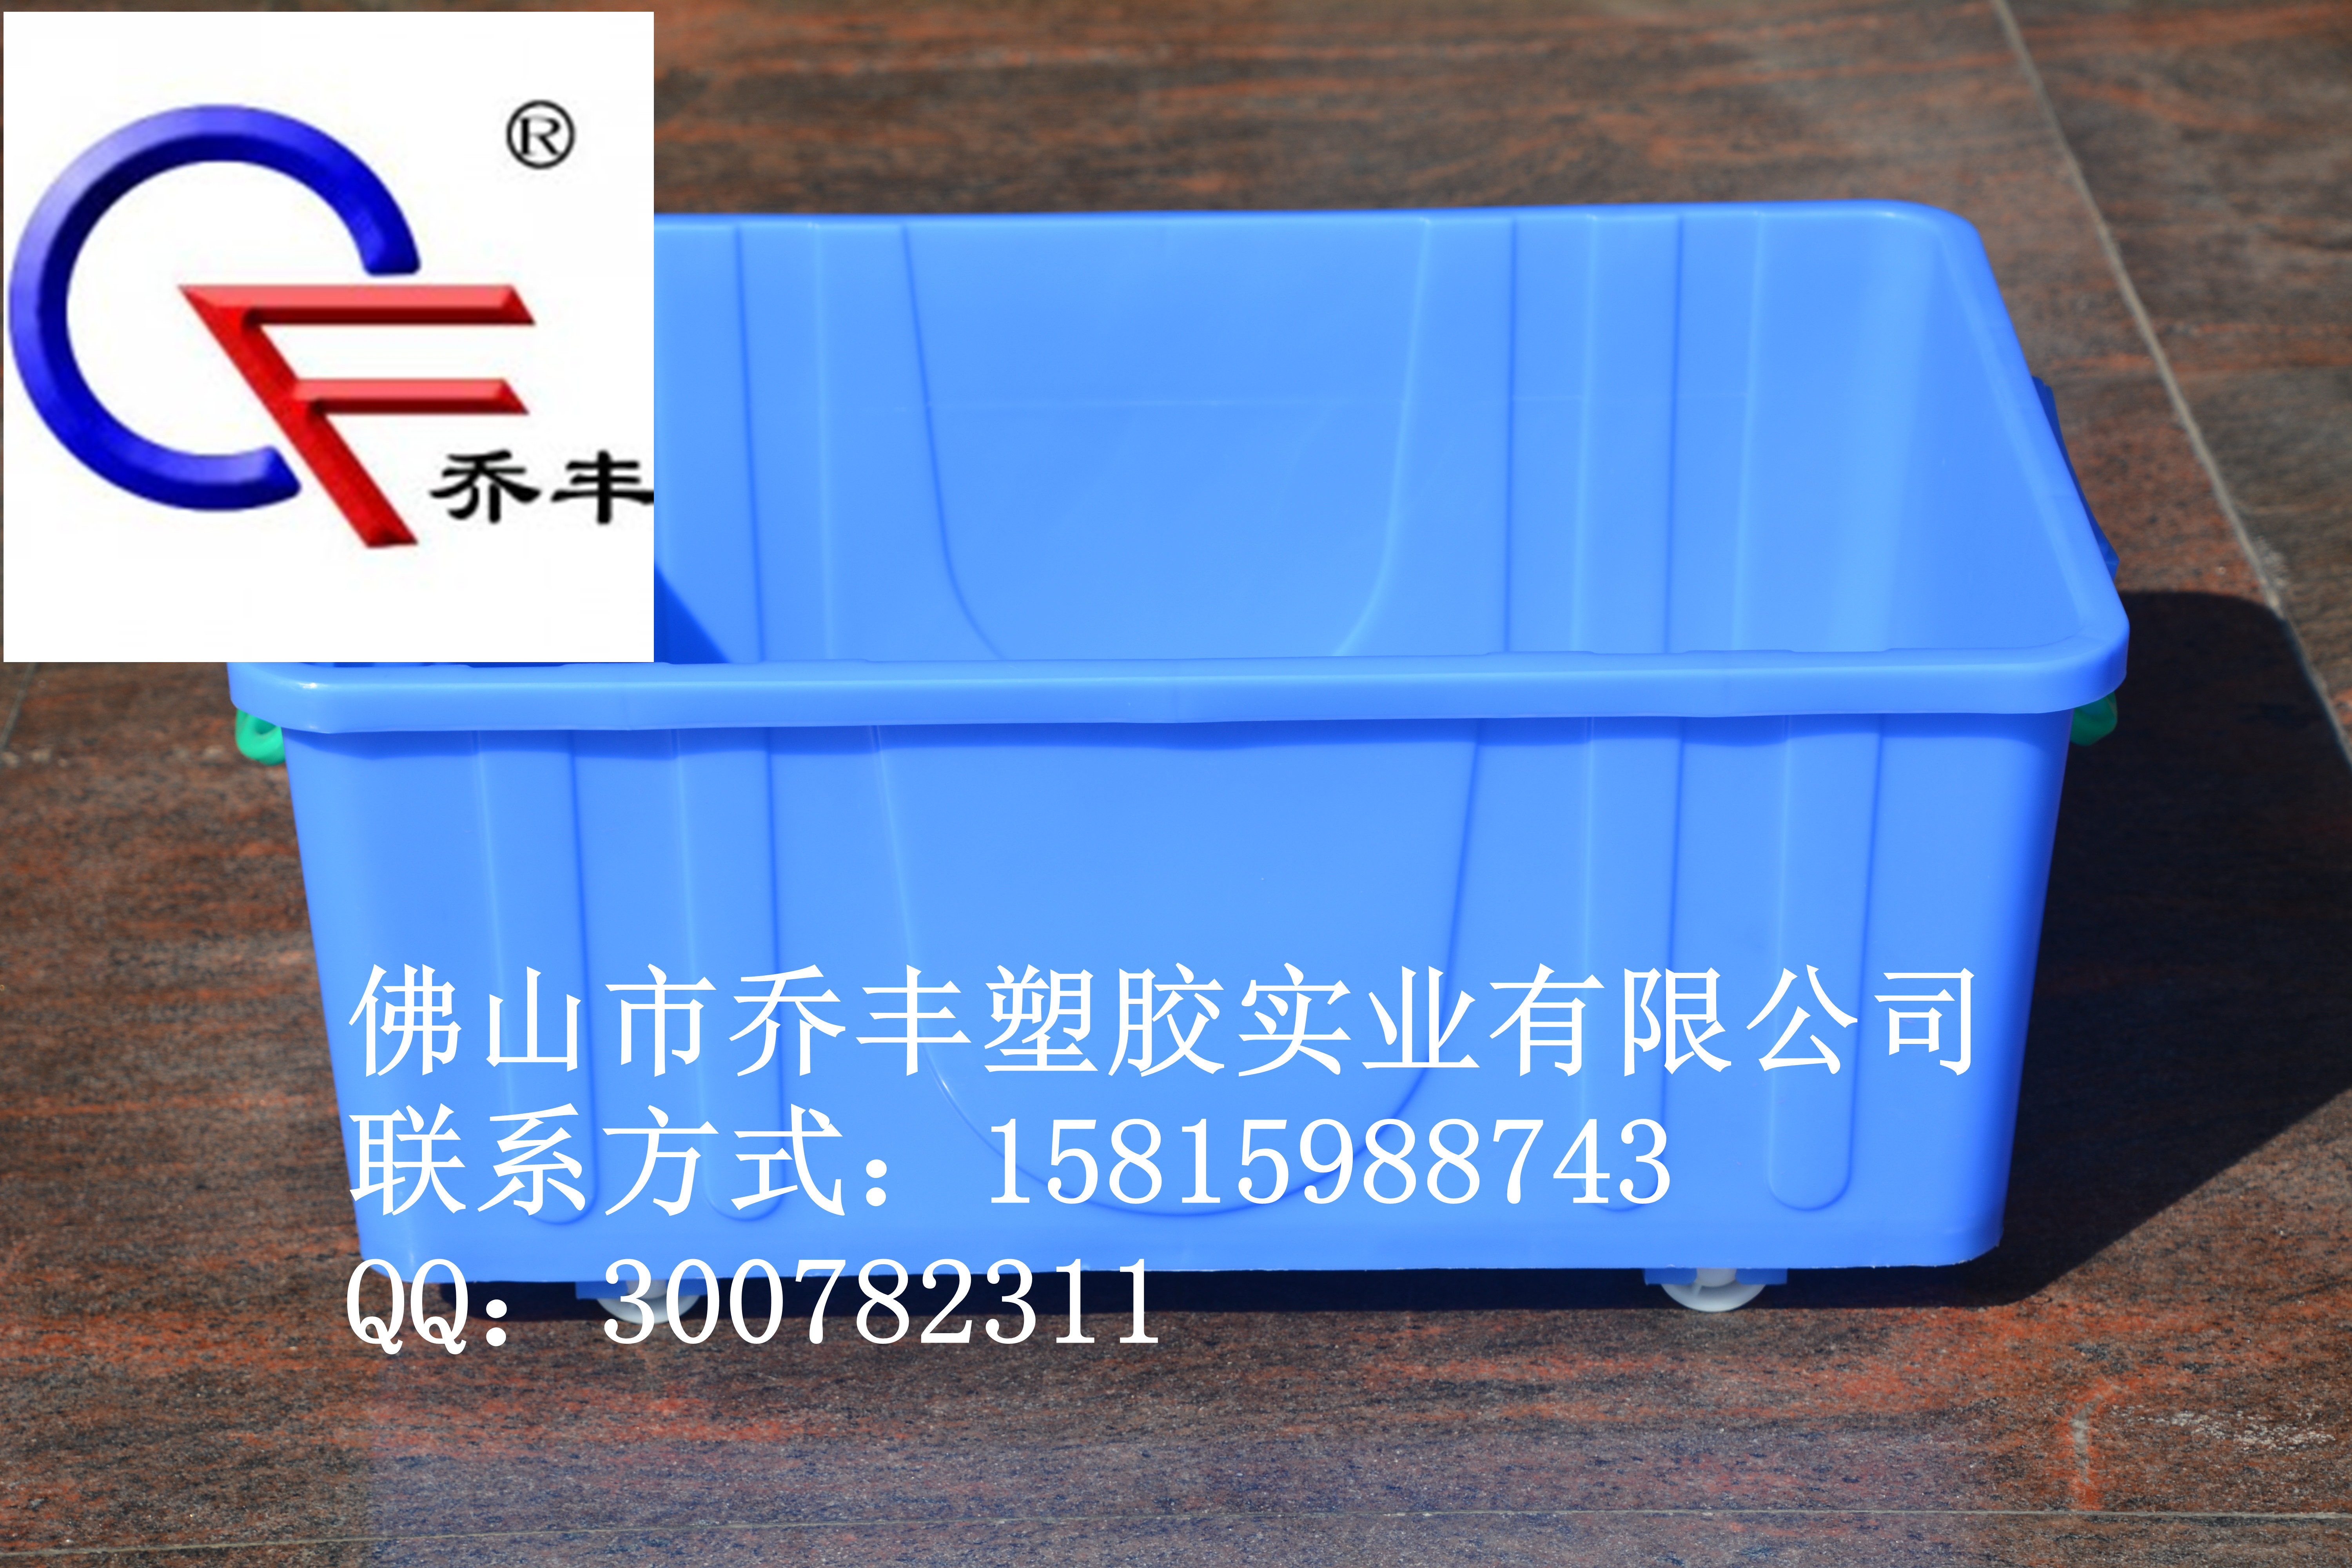 株洲通用型乔丰塑料周转箱生产厂家，株洲通用型乔丰塑料周转箱，